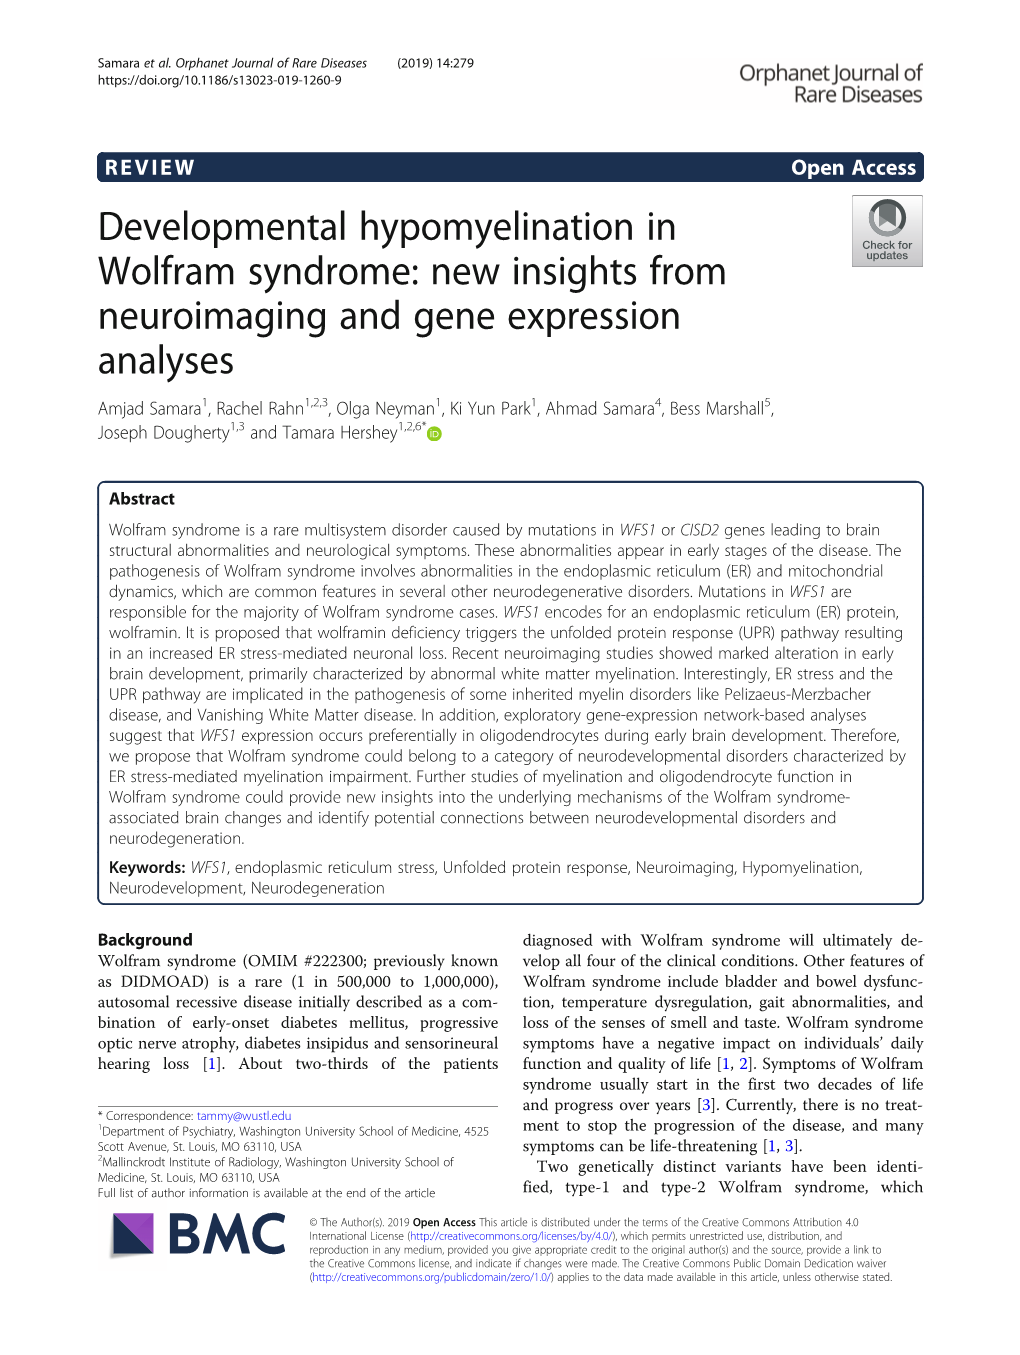 Developmental Hypomyelination In